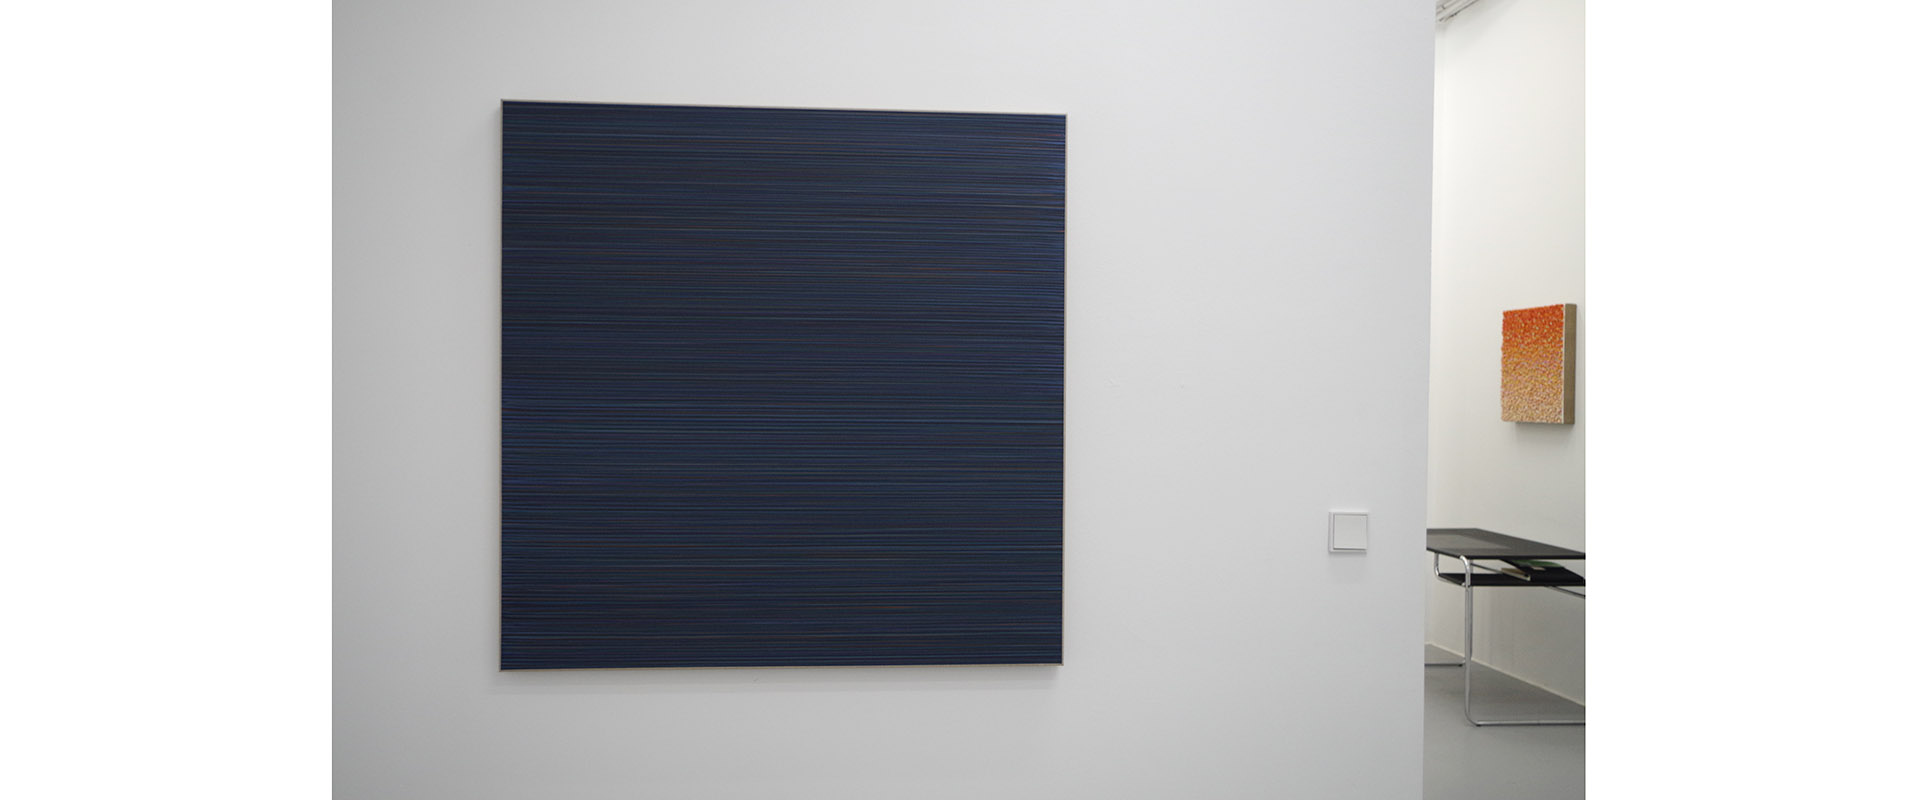 Ausstellungsansicht "Mostly Monochrome", Galerie Renate Bender 2015